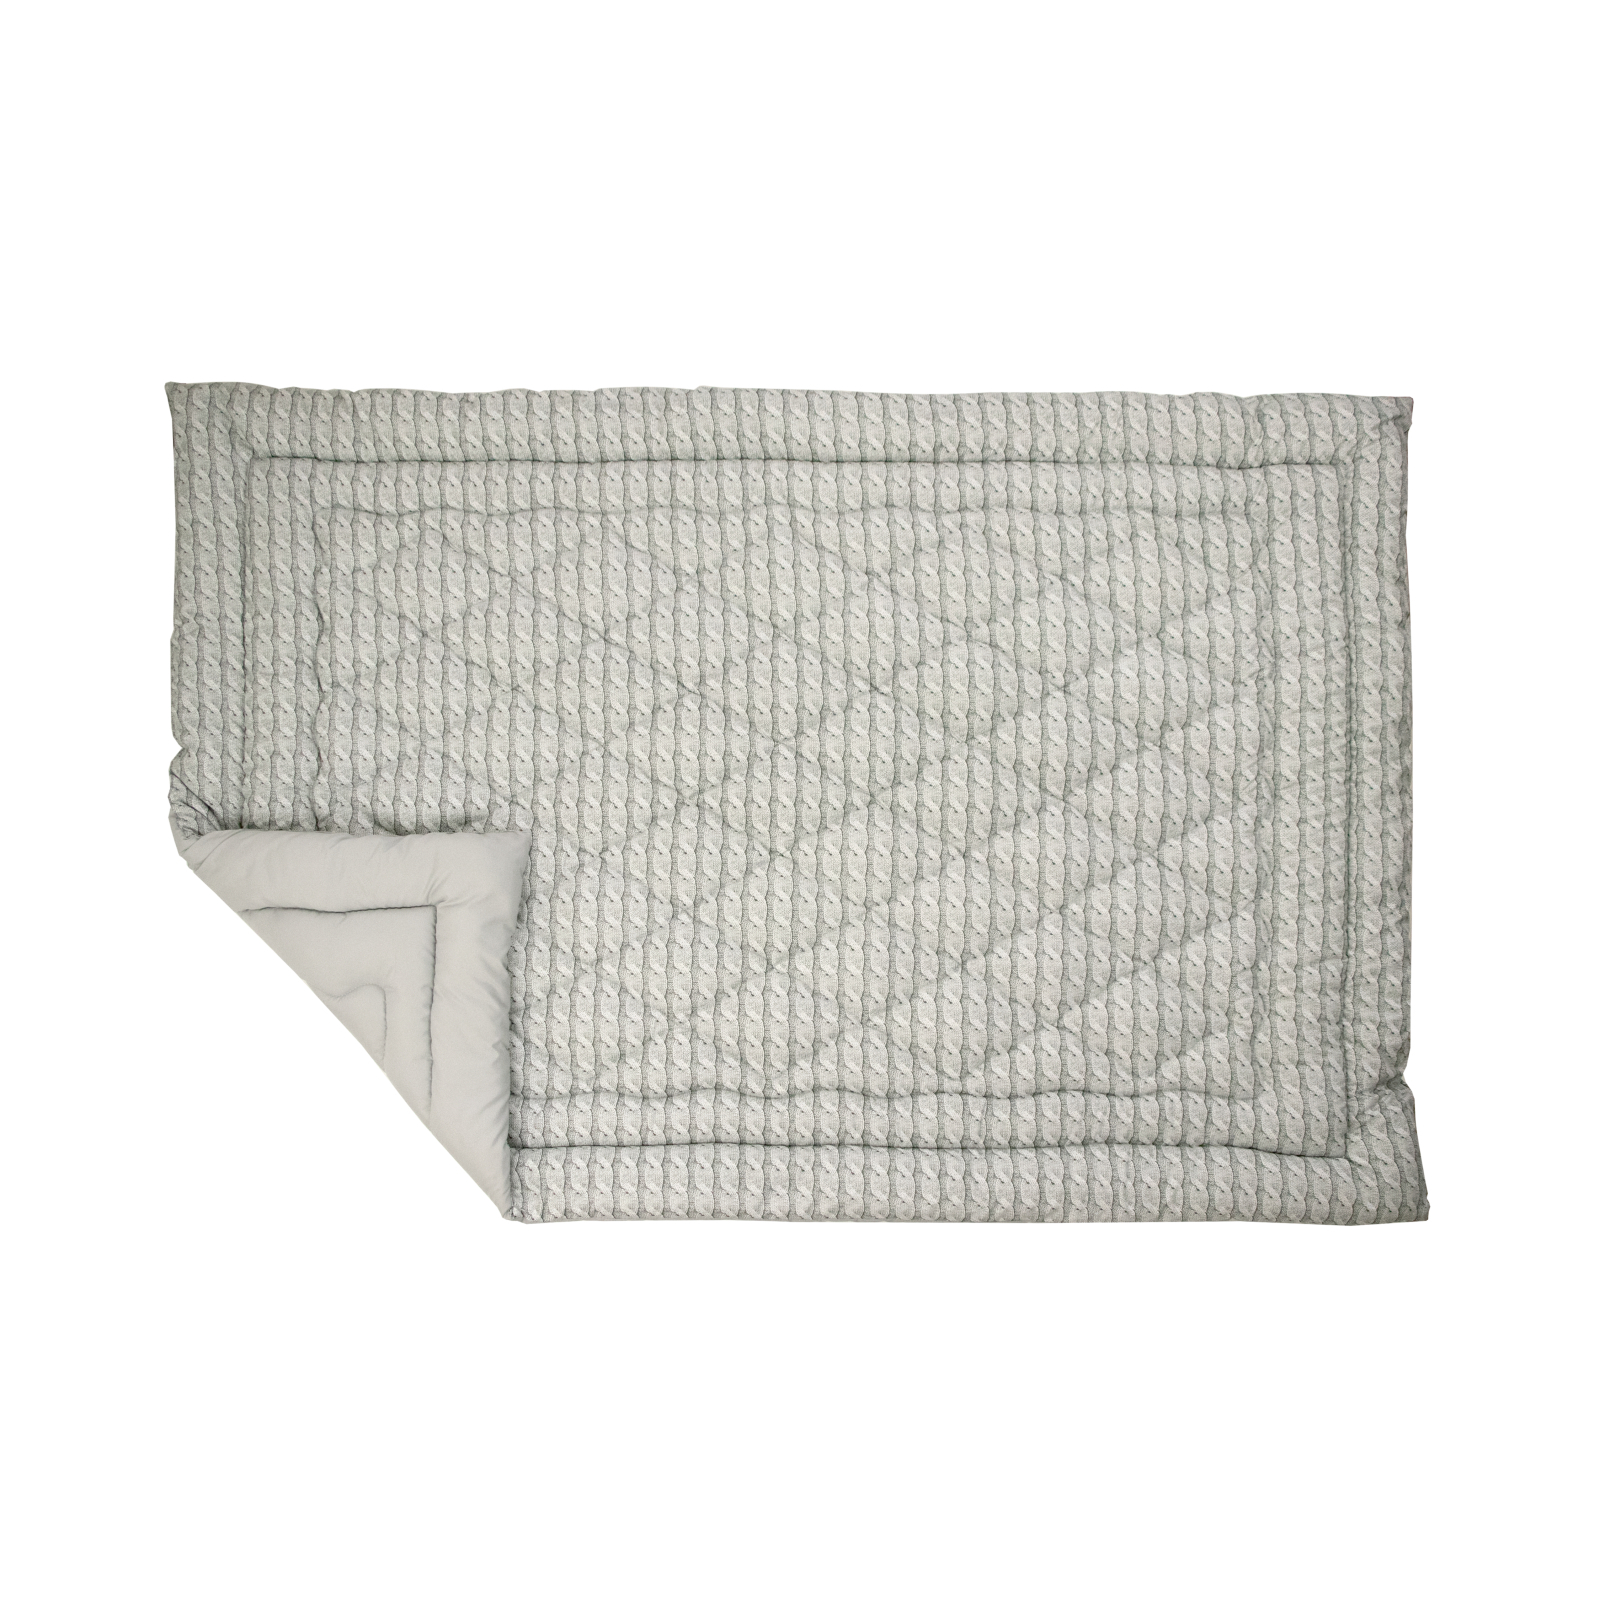 Одеяло Руно двойное силиконовое Grey Braid зима 140х205 (Р316.52_Grey Braid) изображение 2